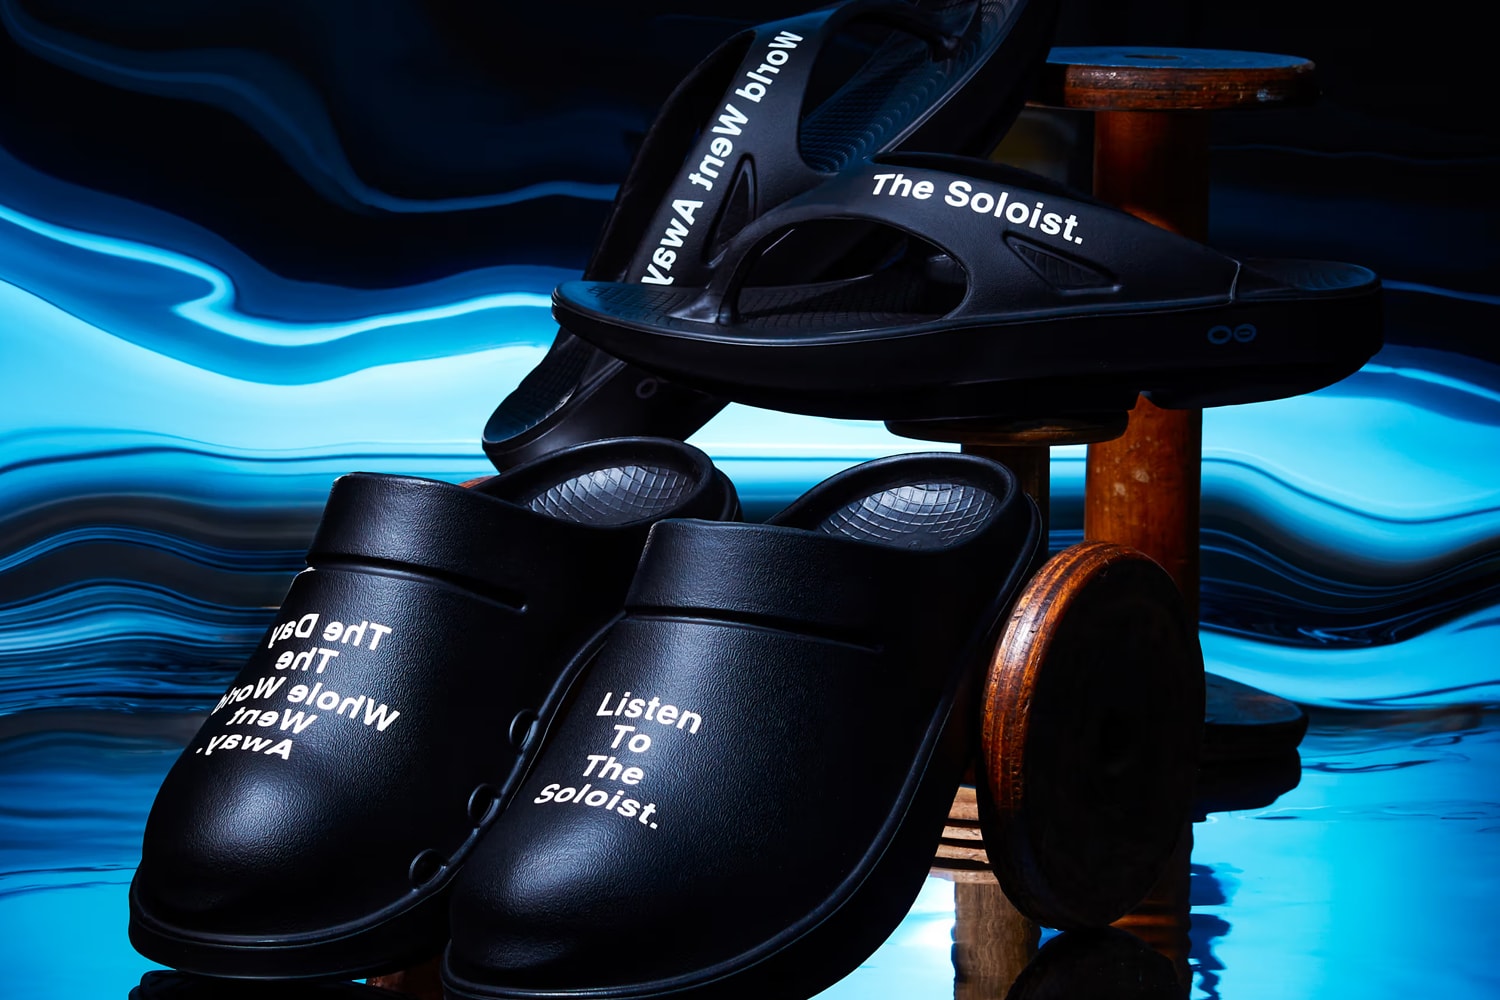 TAKAHIROMIYASHITATheSoloist. x OOFOS 全新聯名鞋款即將發售